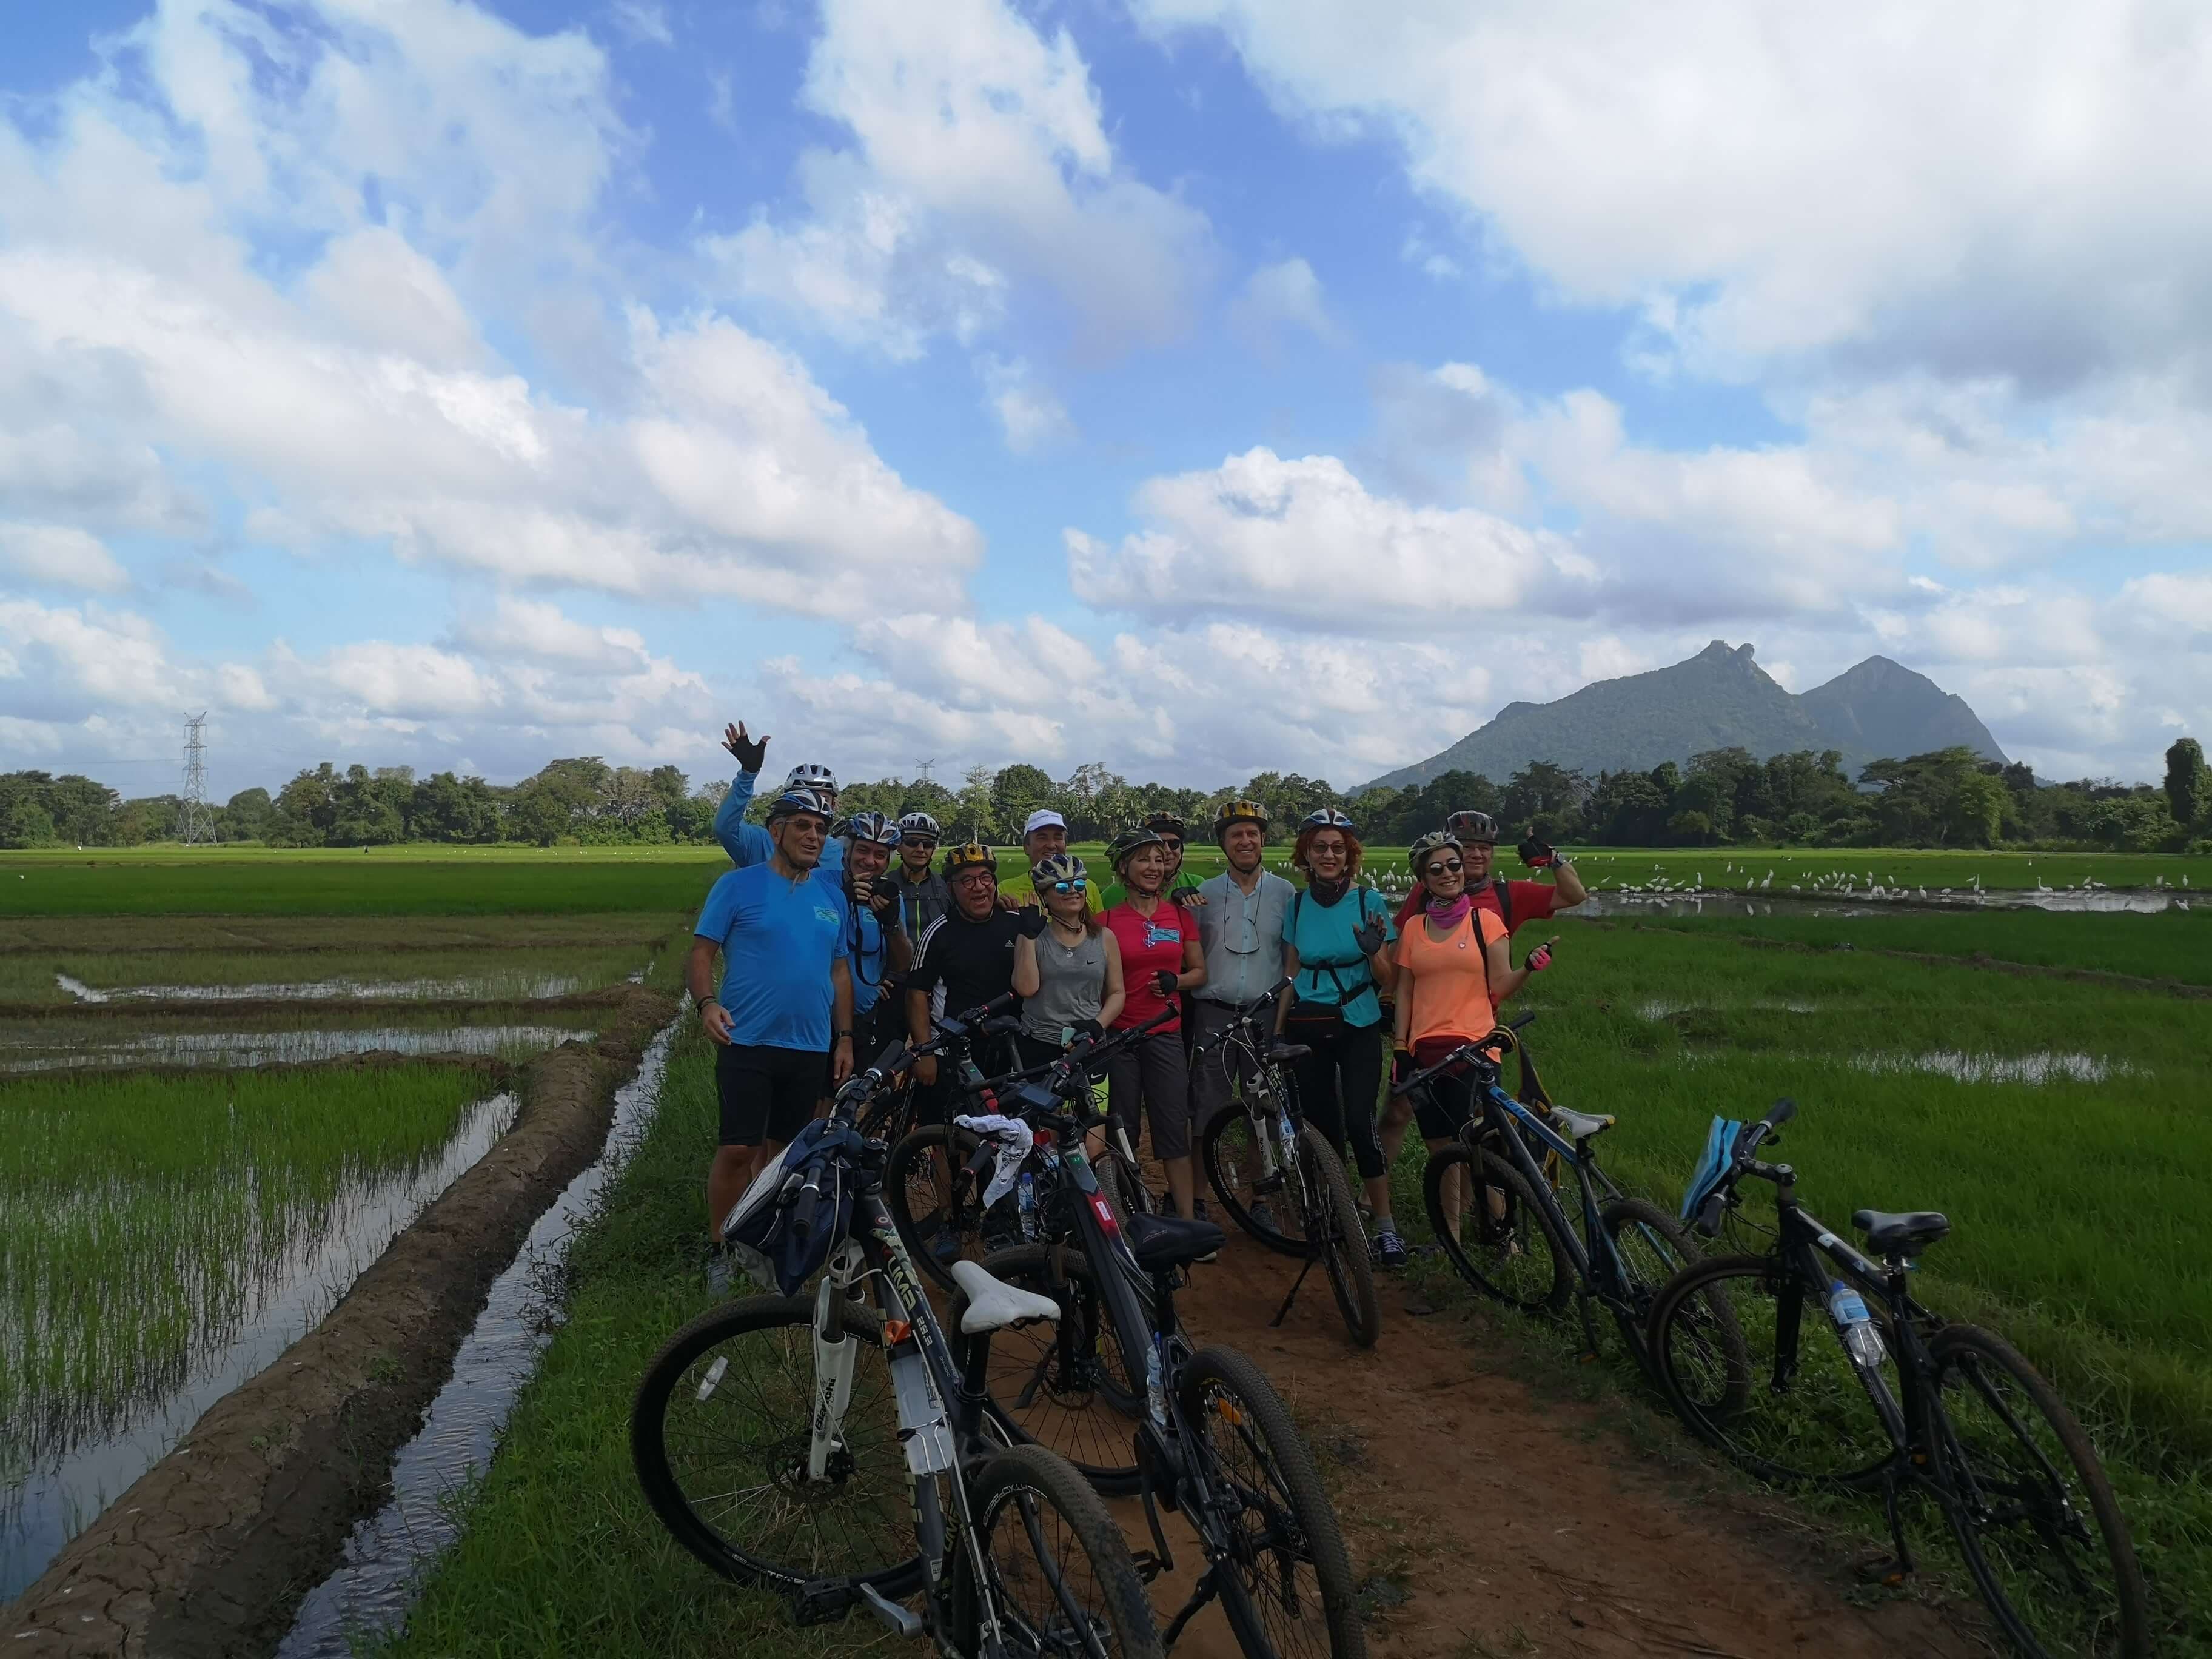 Die Radfahrer, die durch das schöne Reisfeld in Polonnaruwa Sri Lanka radeln